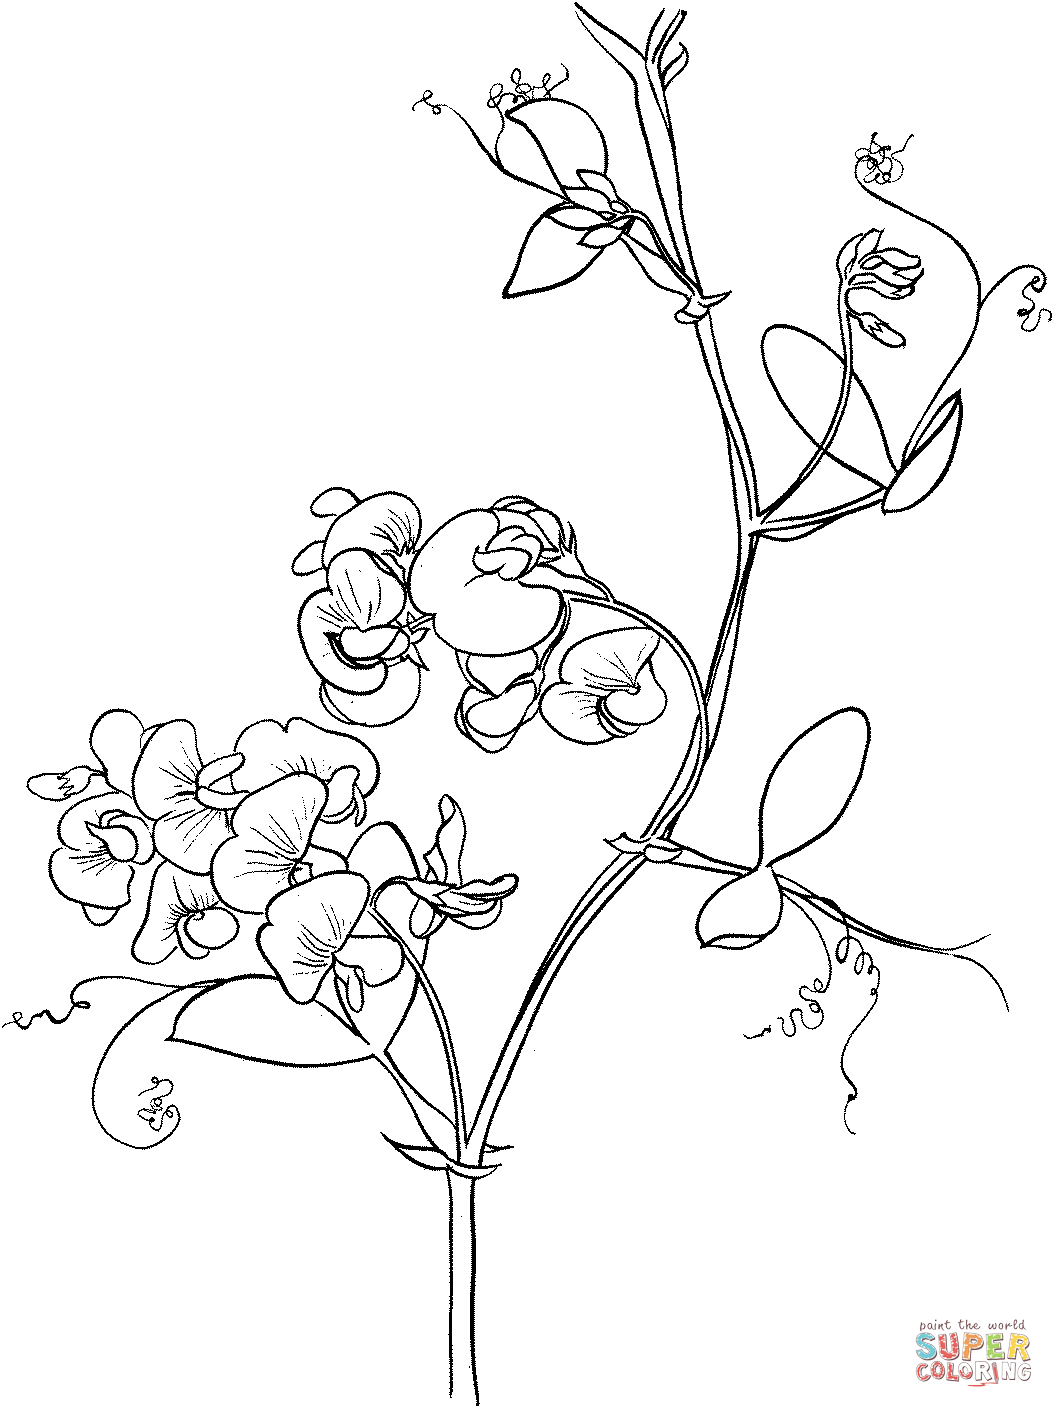 Lathyrus Odoratus o Sweet Pea de Sweet Pea